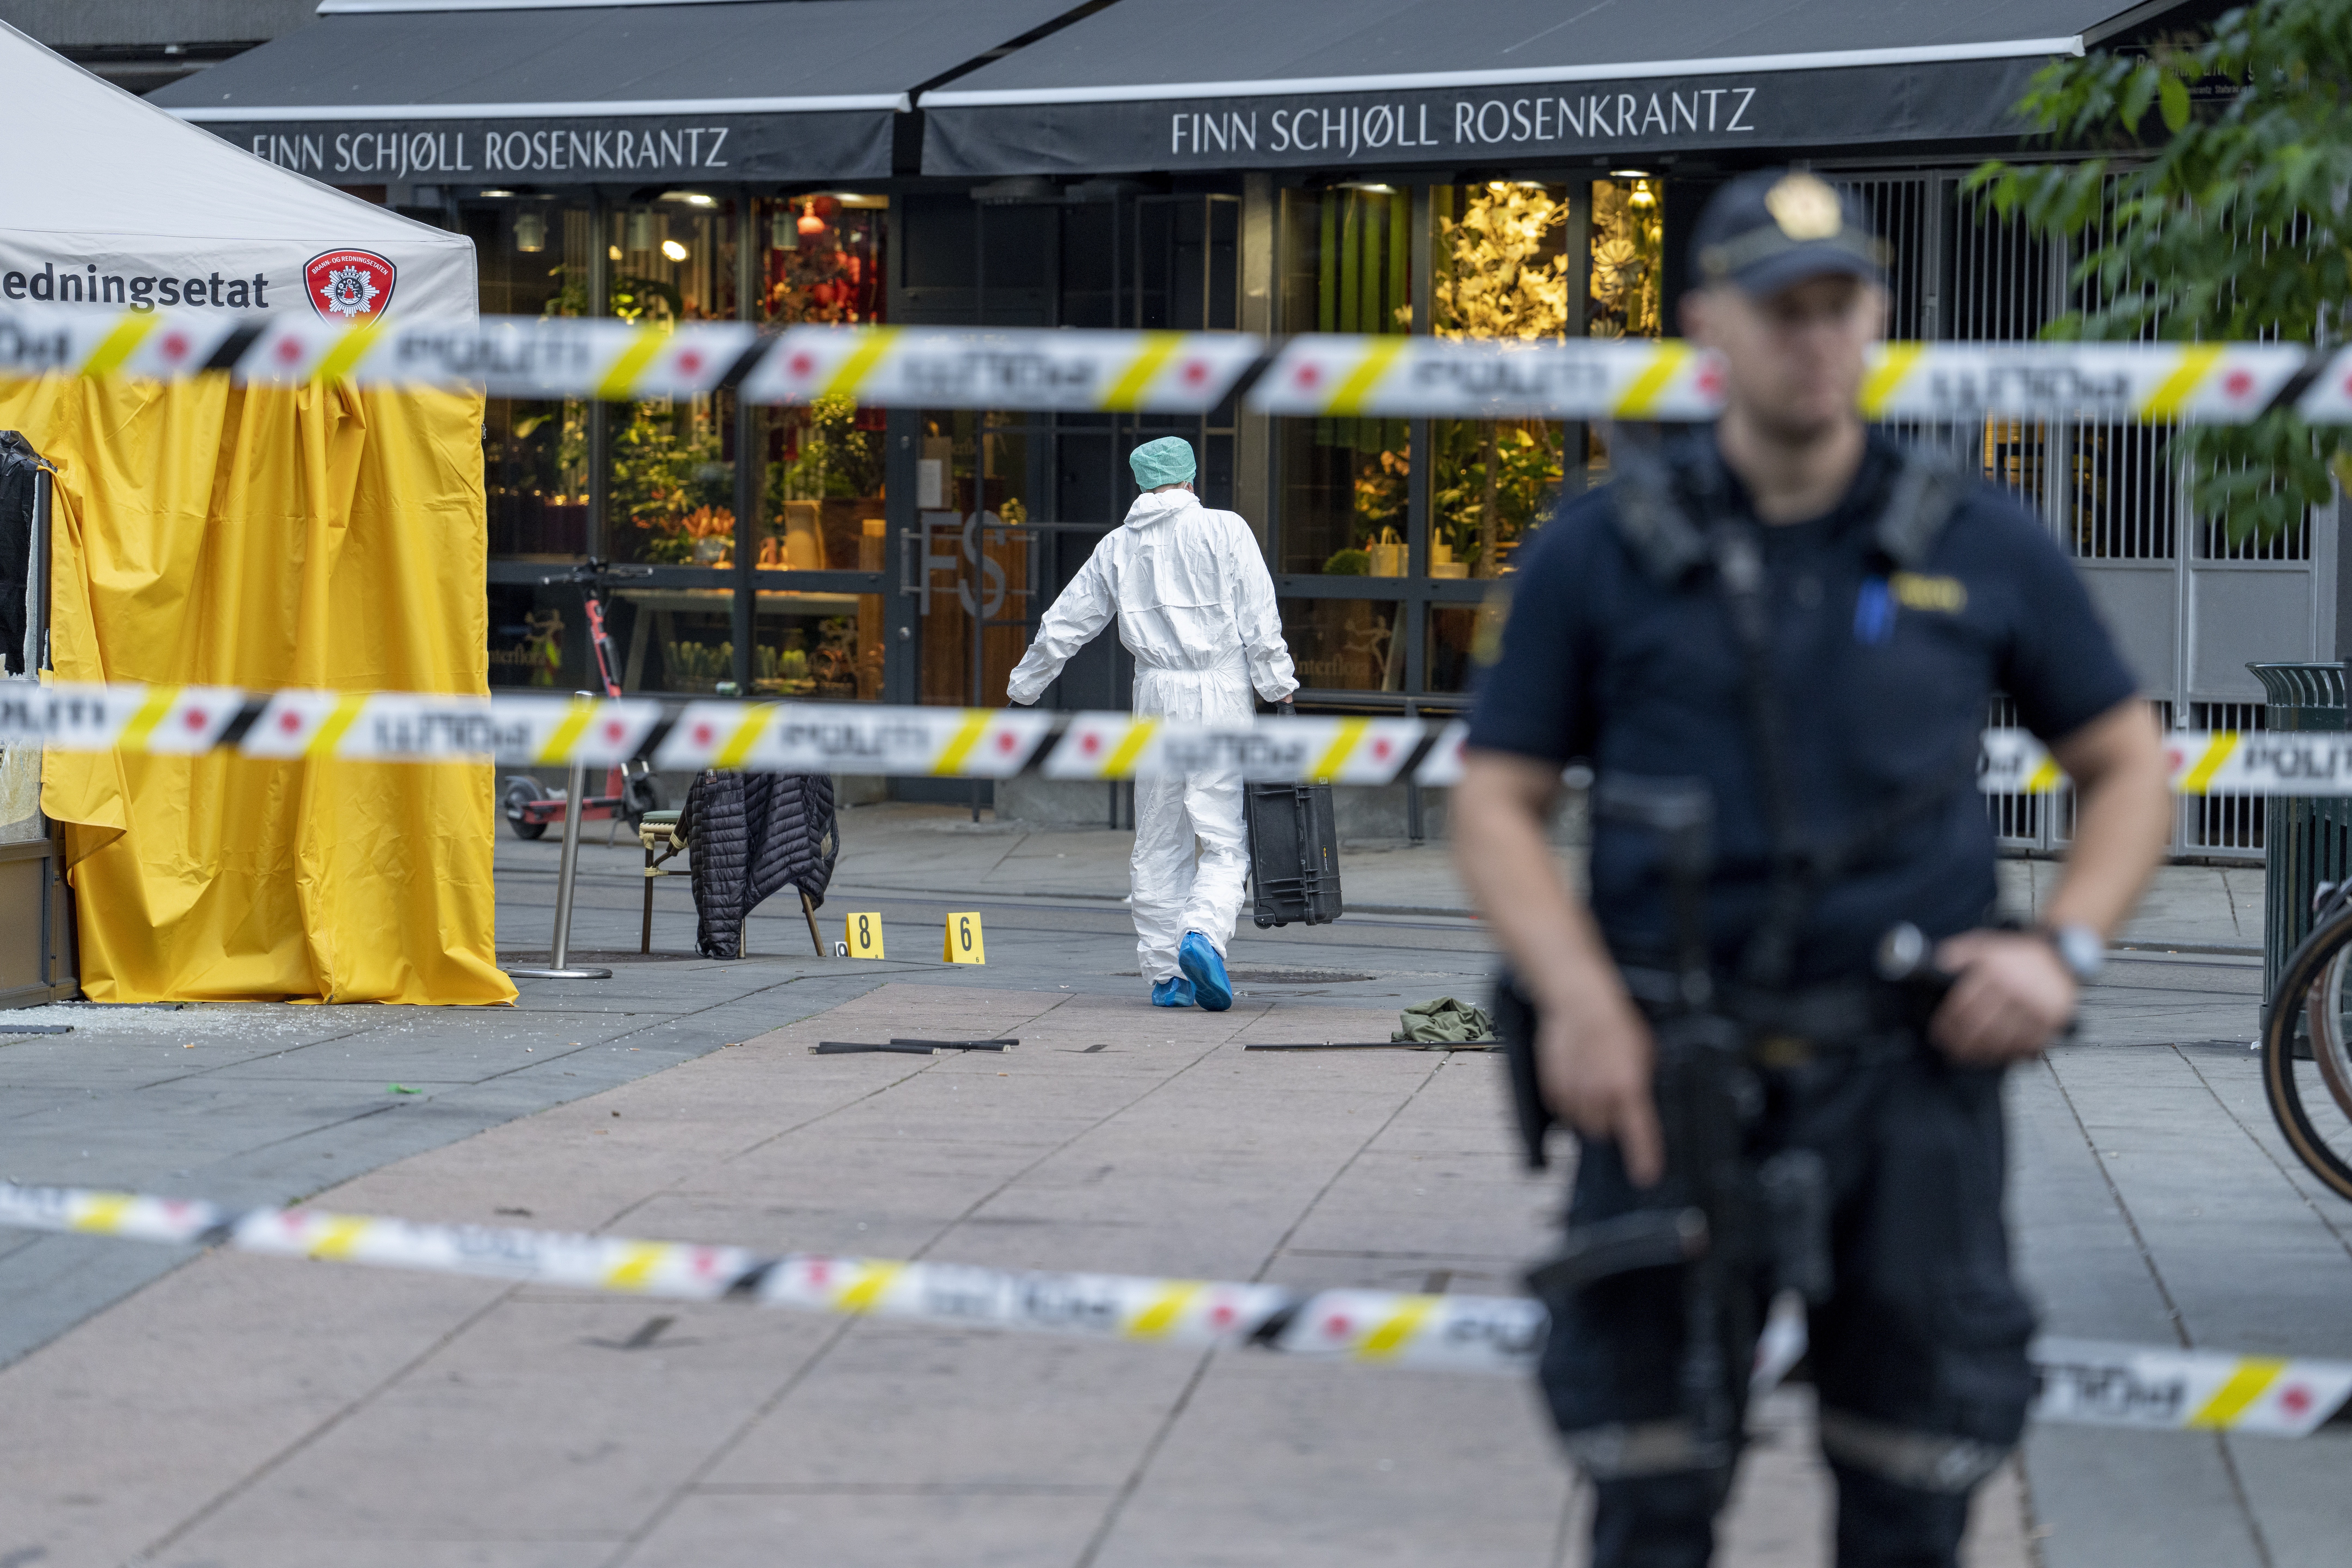 Doi morţi şi 21 răniţi în urma unui atac armat, la Oslo. Incidentul este tratat ca un act terorist. Cine ar fi autorul